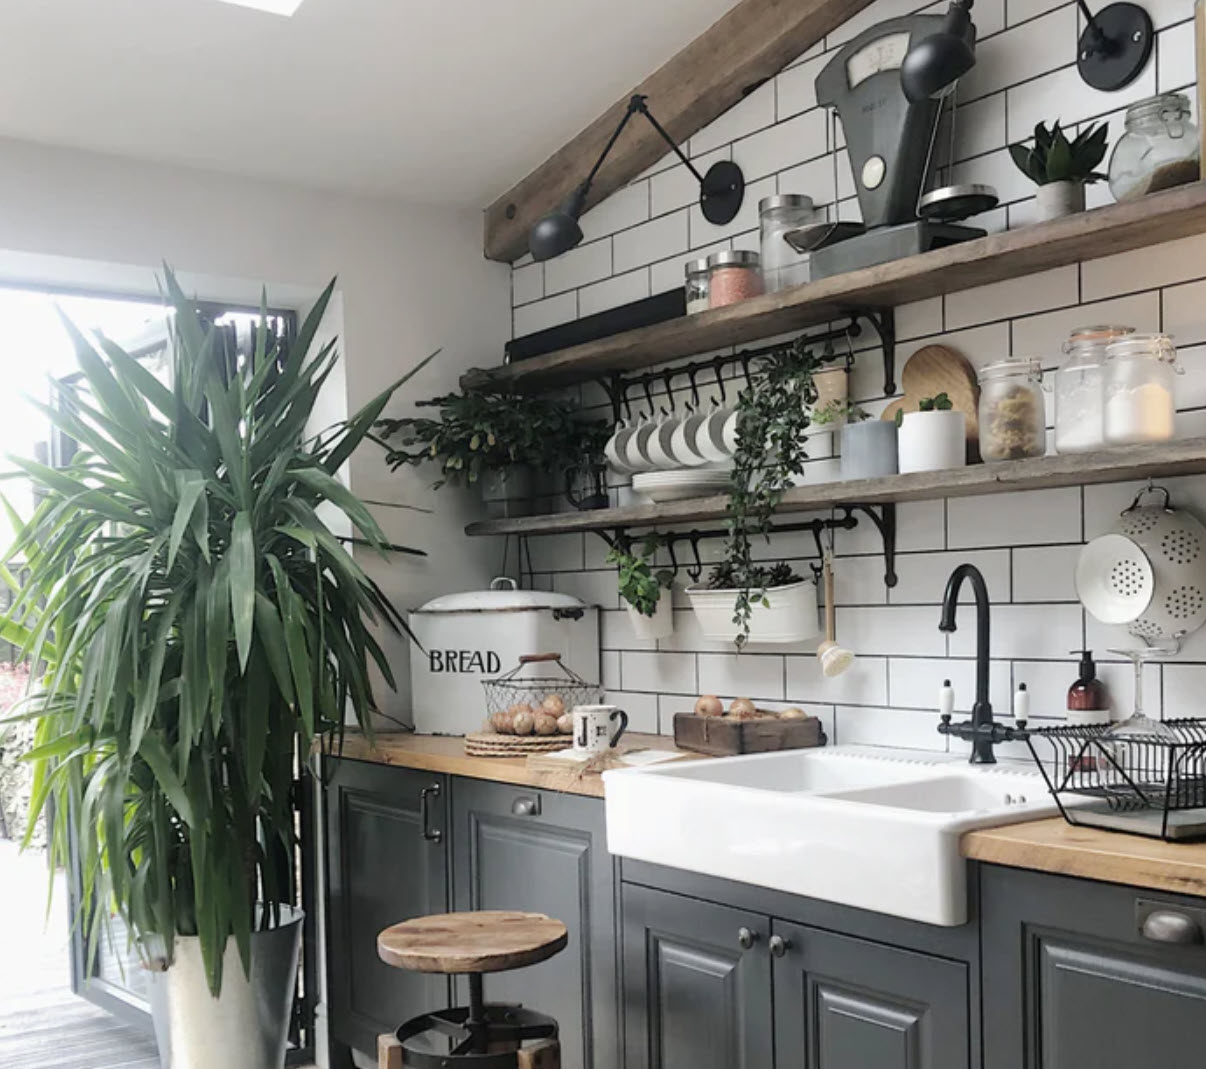 Latest Modular Kitchen Design 2023 | Trendy Kitchen Makeover Ideas | Kitchen Cabinets Ideas